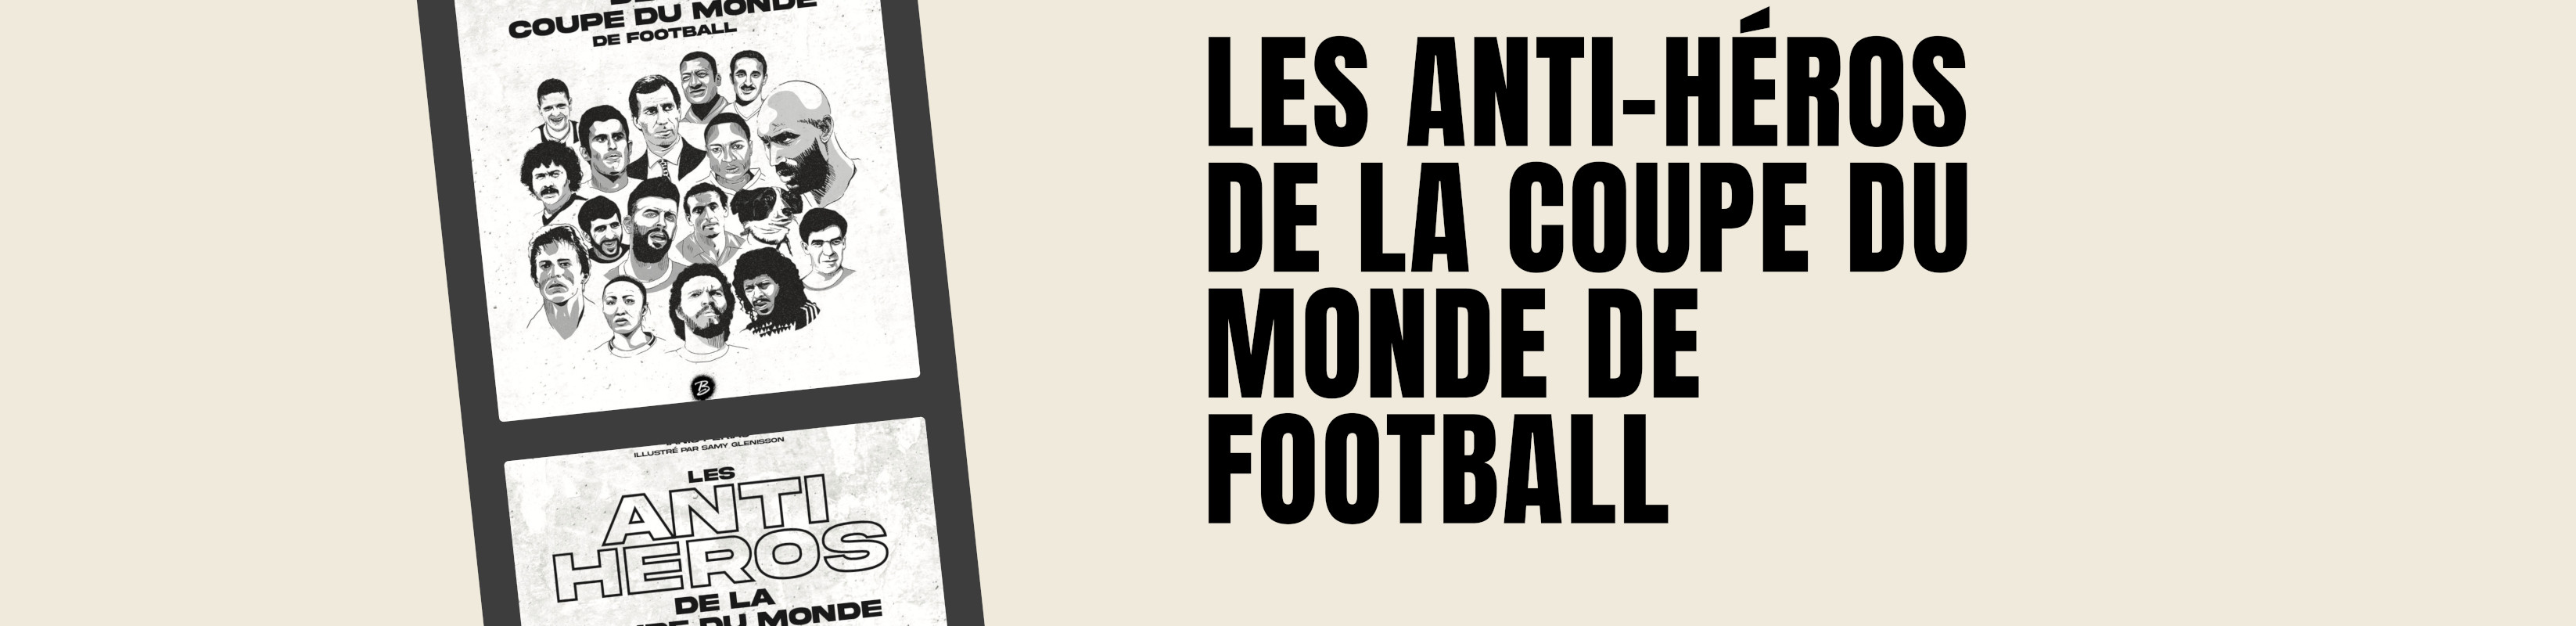 LES ANTI-HÉROS DE LA COUPE DU MONDE DE FOOTBALL